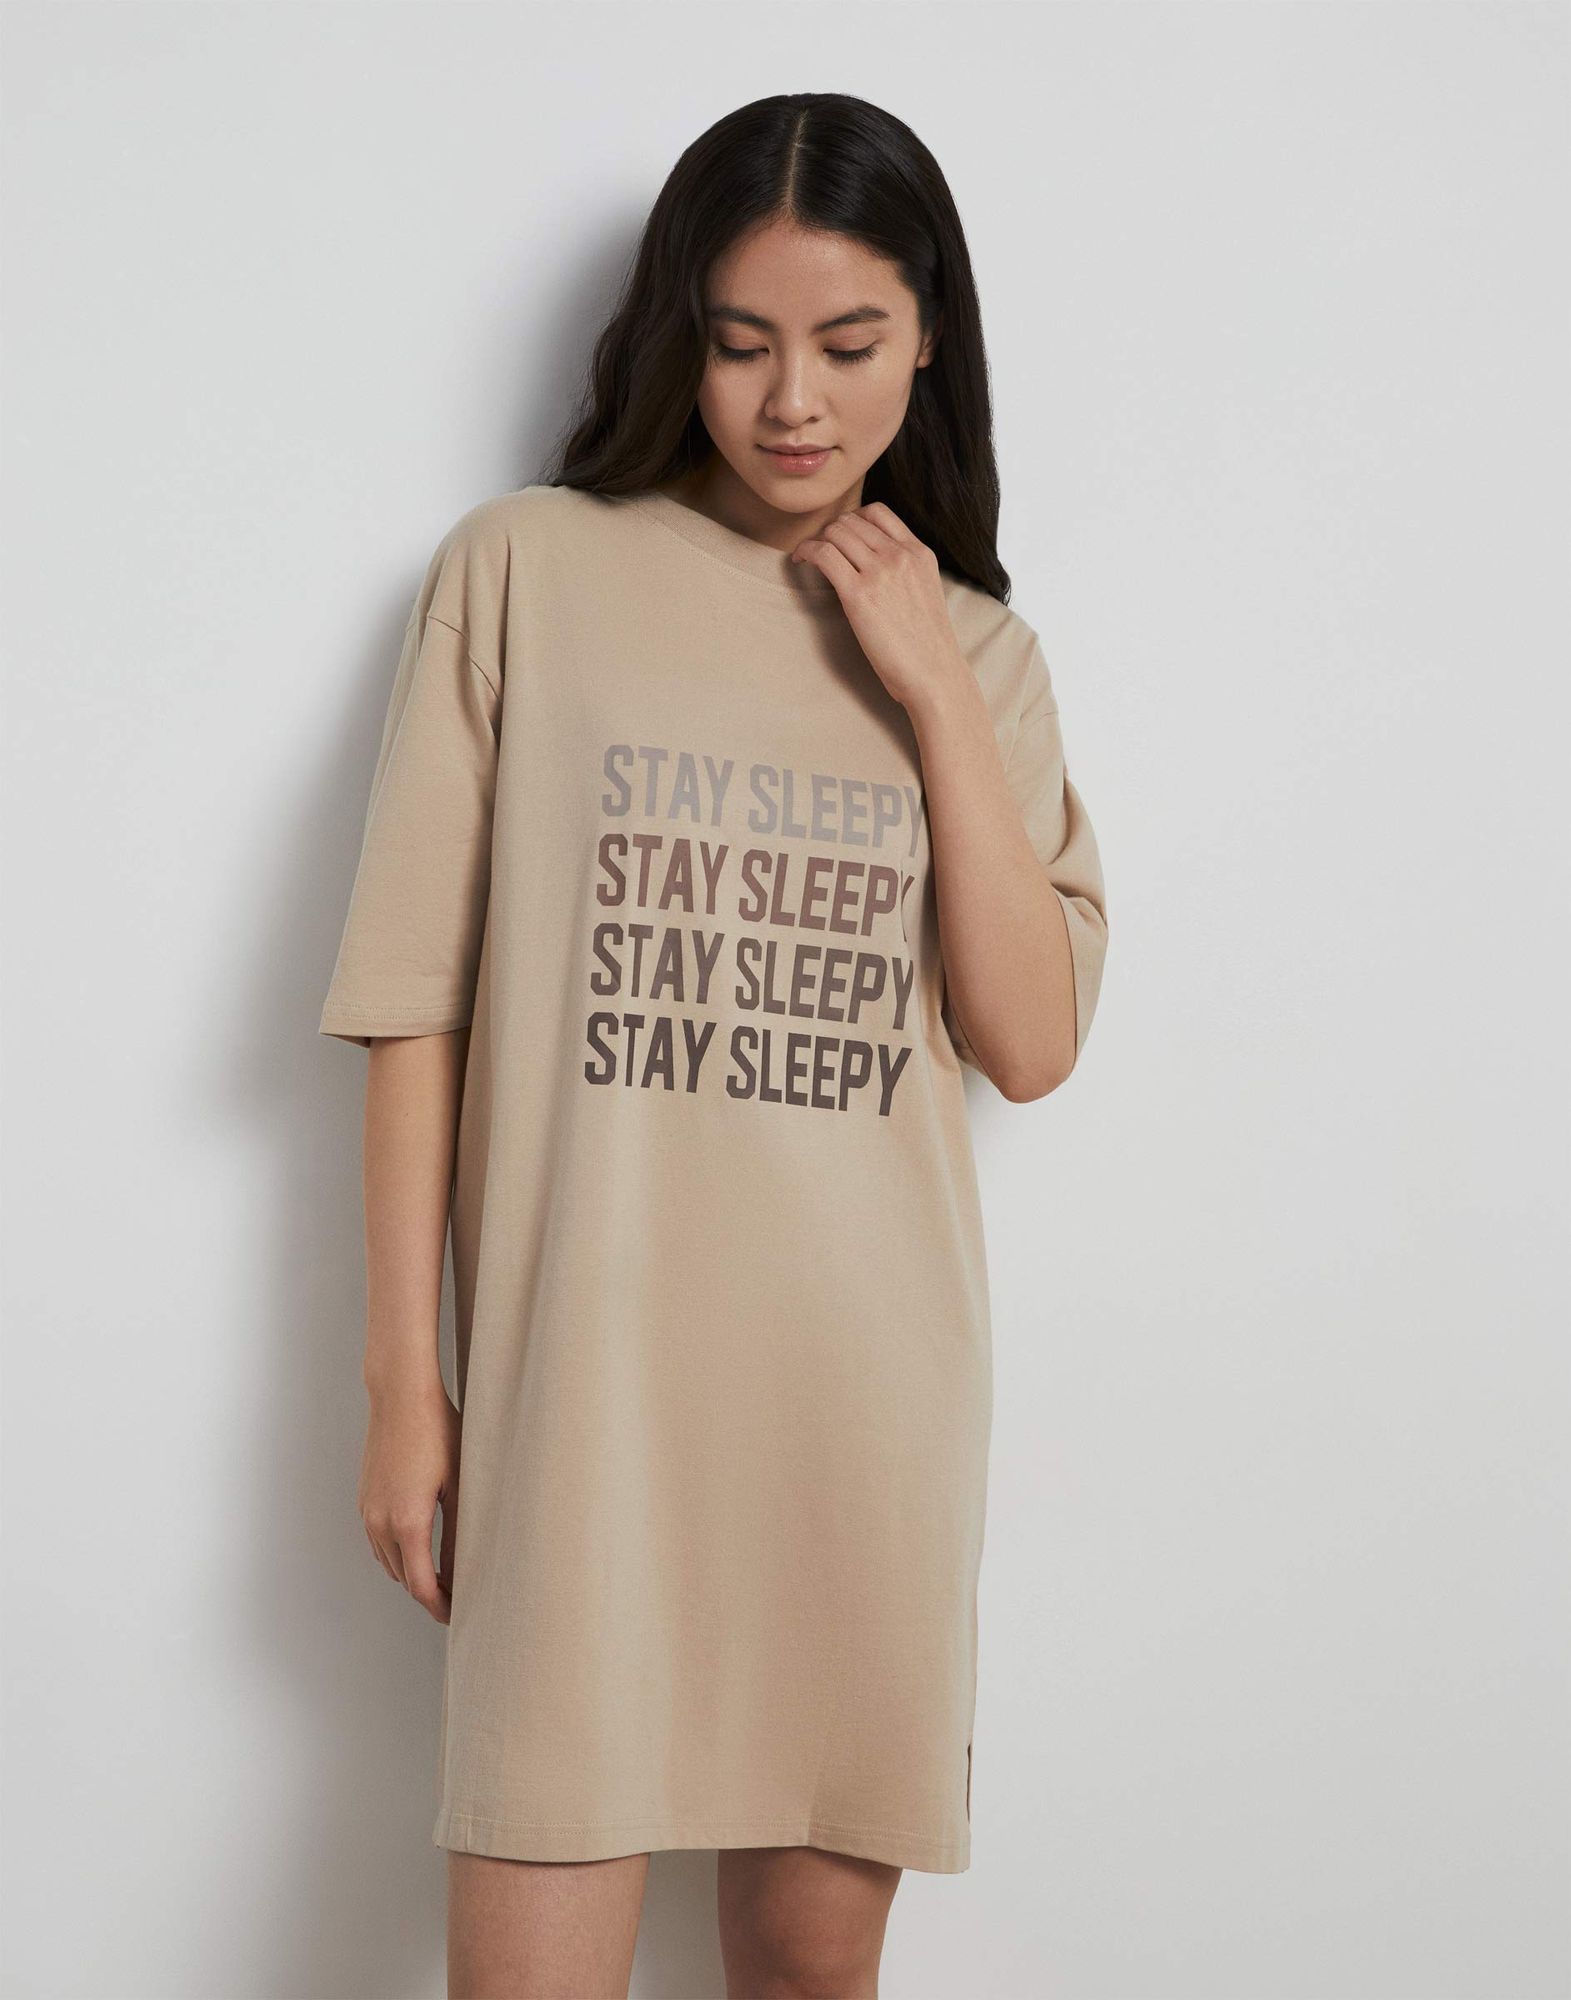 Бежевая ночная сорочка с надписью Stay Sleepy-1